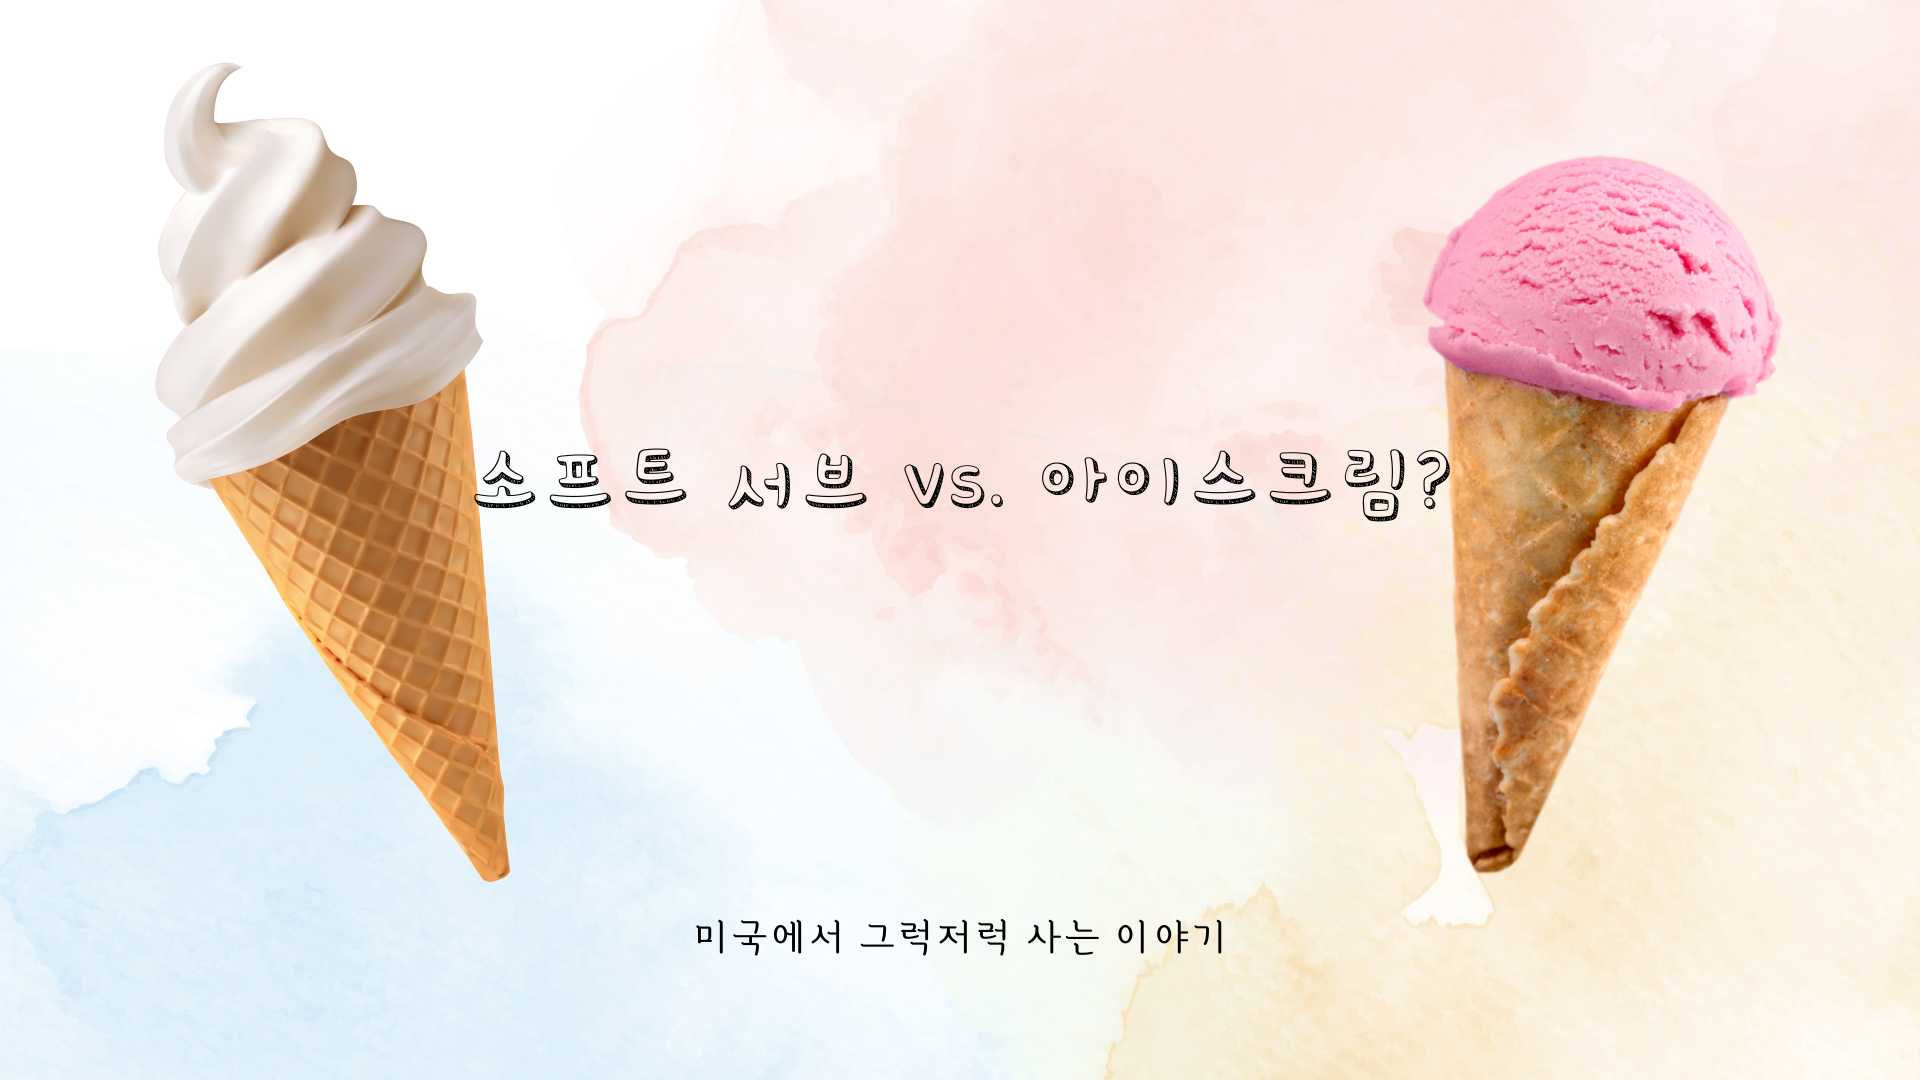 소프트 서브와 아이스크림의 차이를 알아보자.